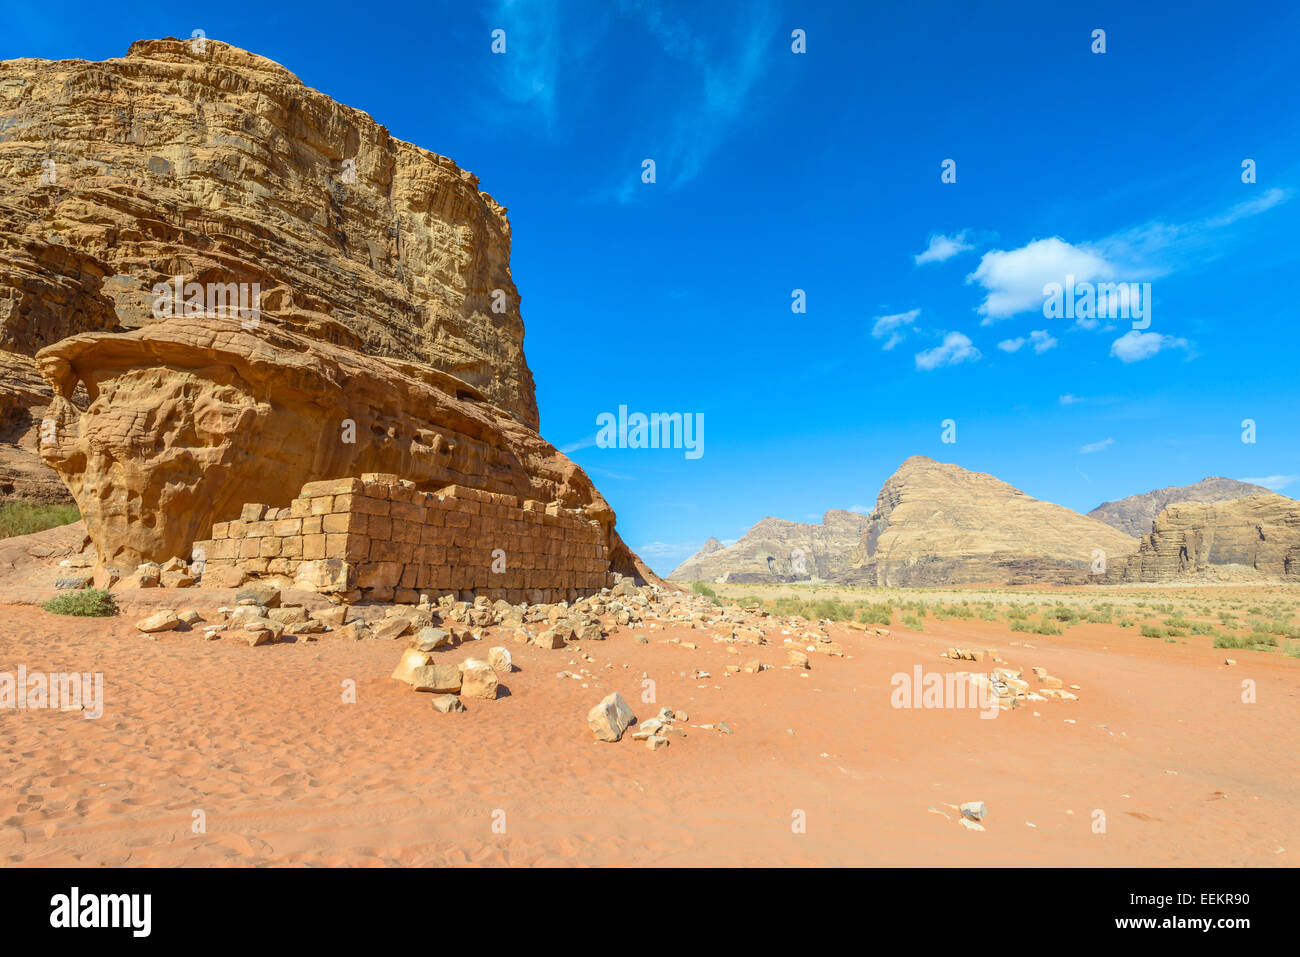 Ruins of  Lawrence of Arabia’s House in Wadi Rum desert, Jordan Stock Photo